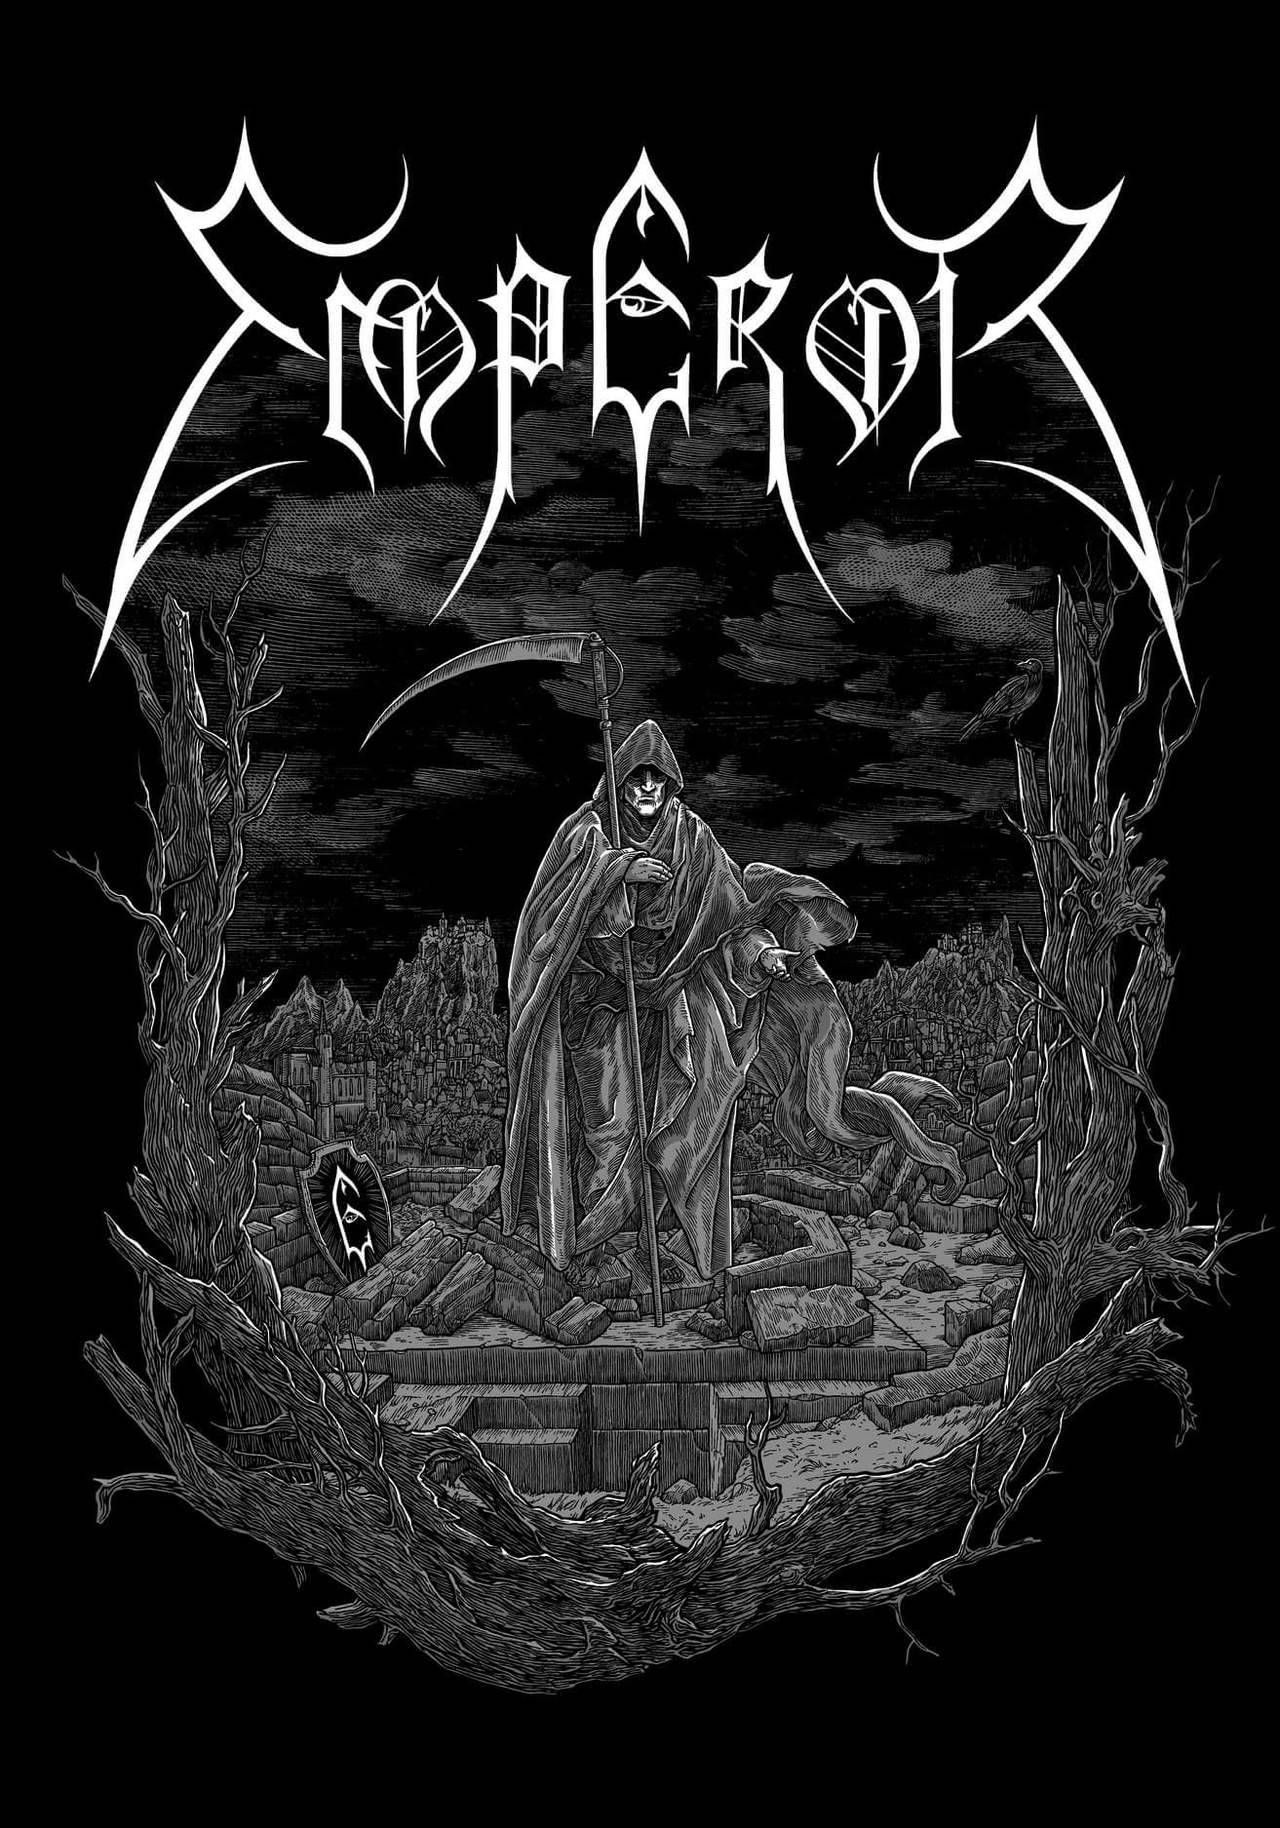 Emperor. Merch design. Førtifem art. Metal band logos, Black metal art, Metal music bands